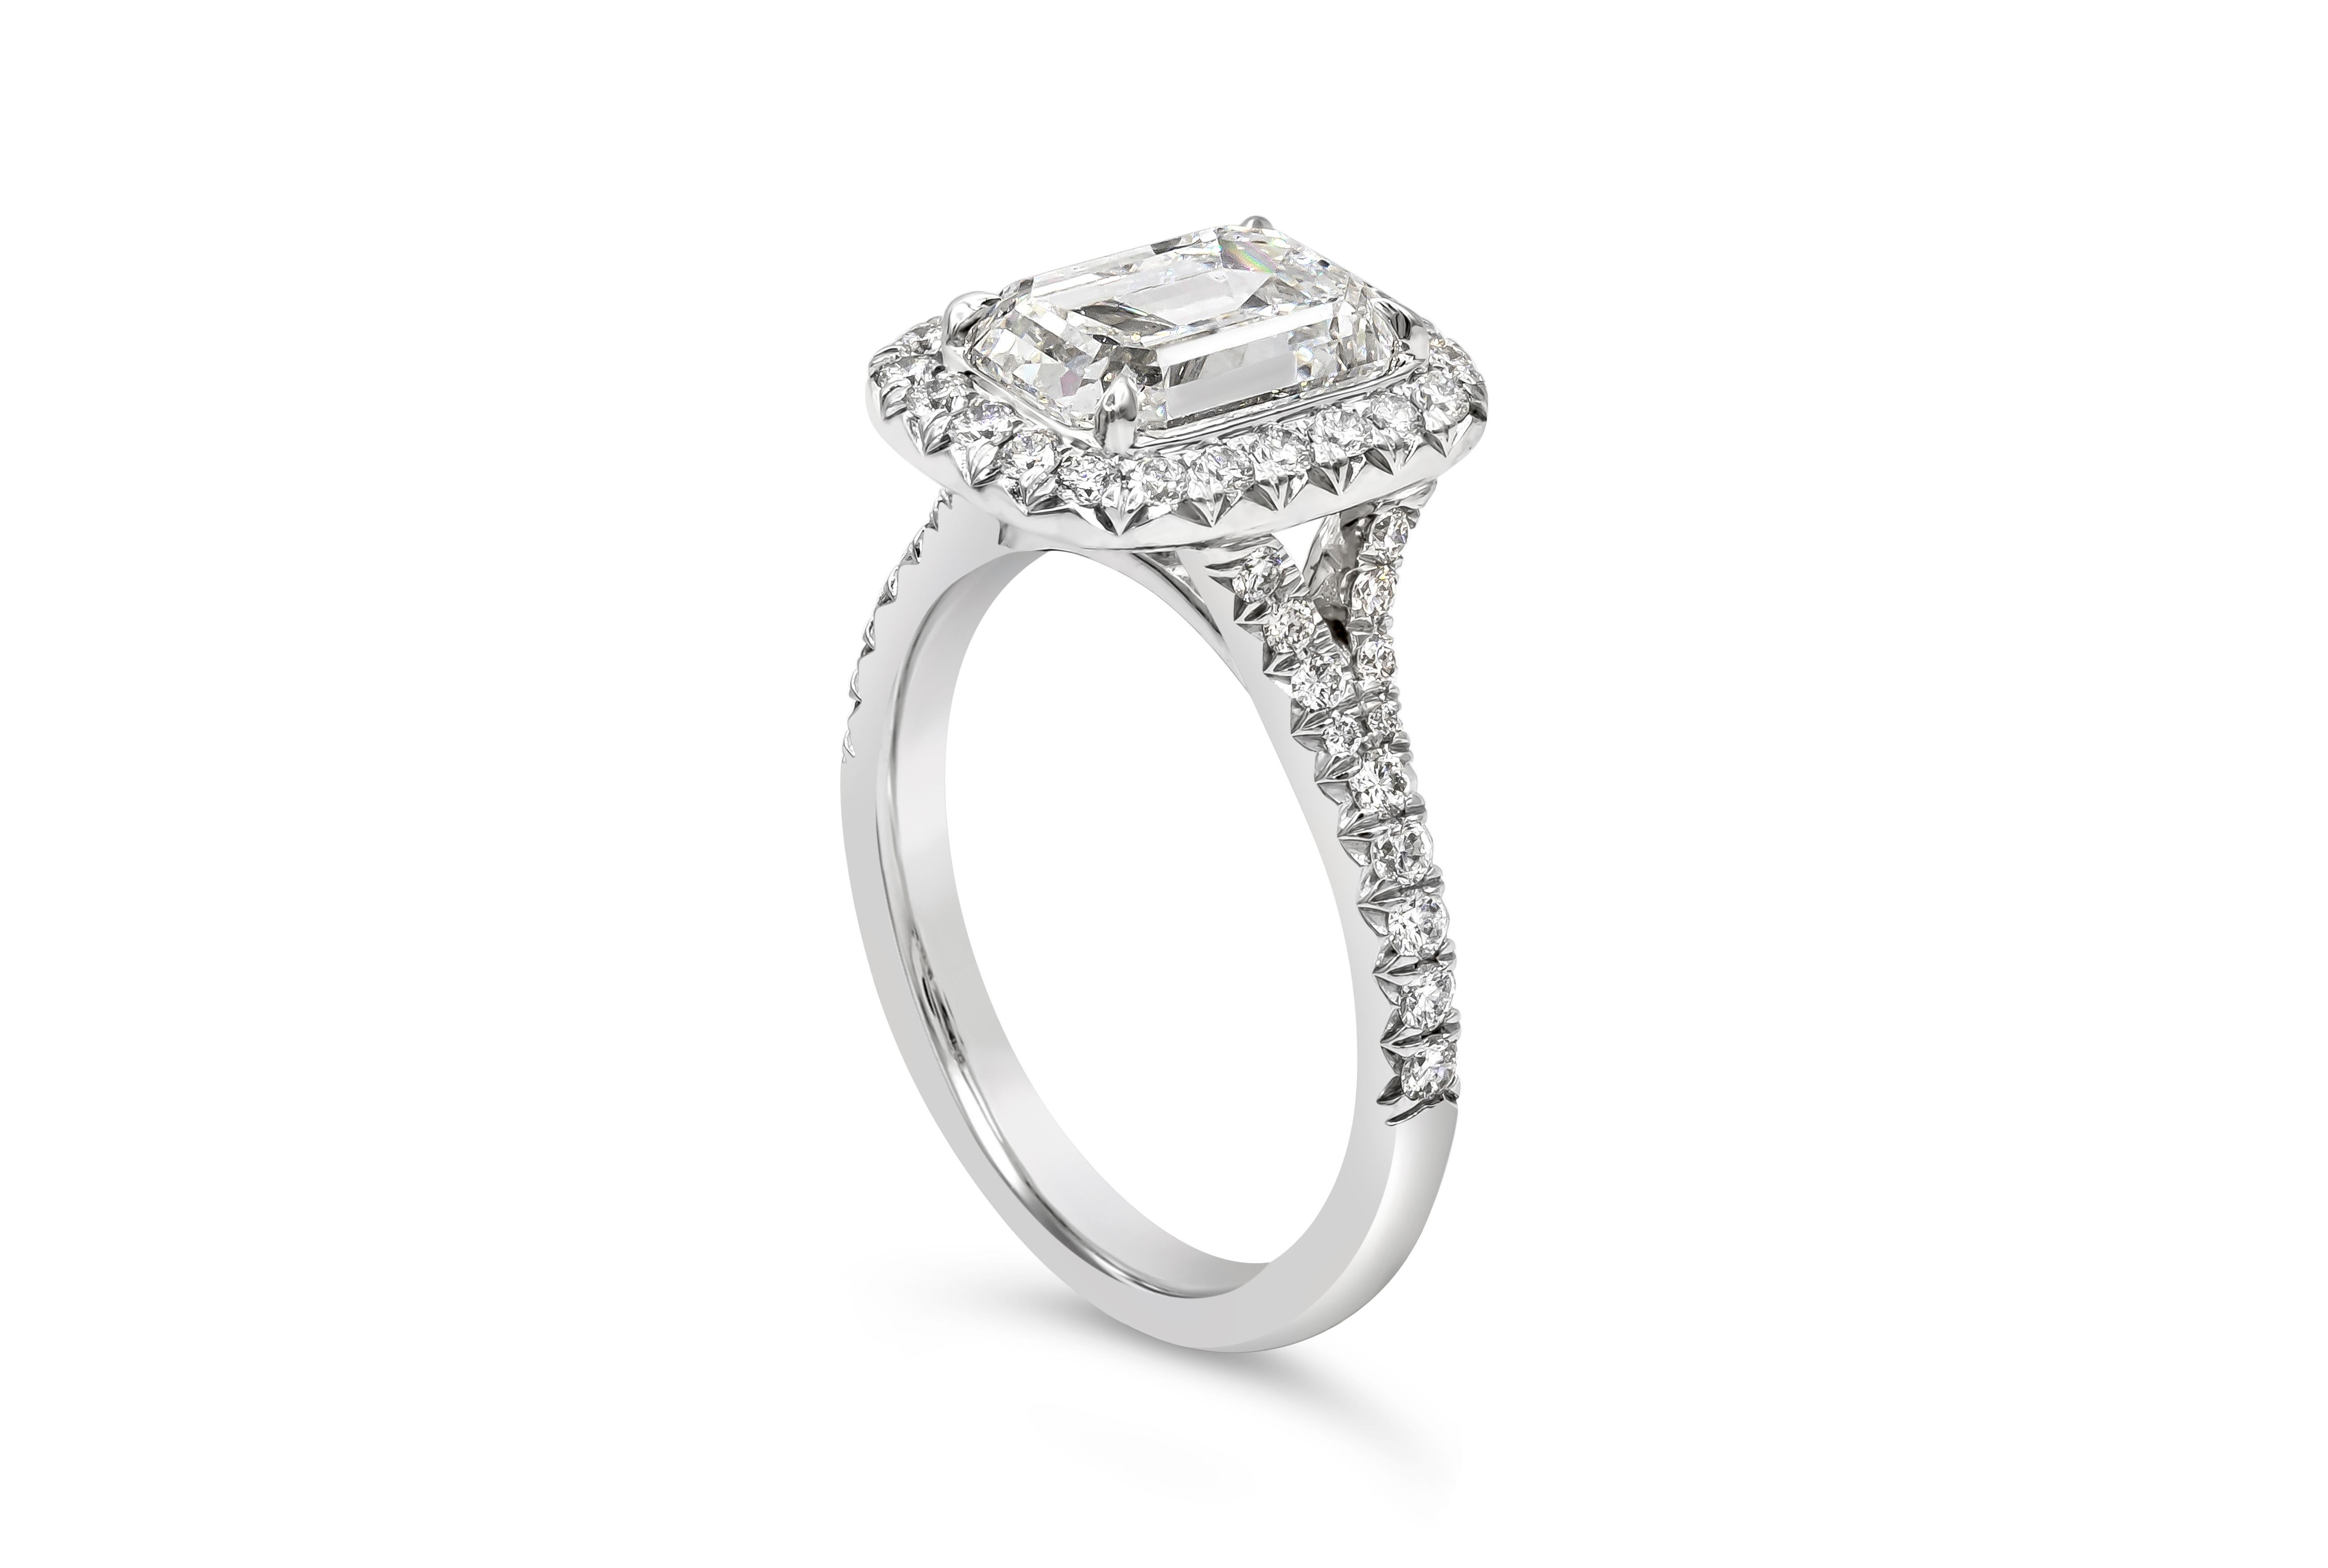 Comprend un diamant taille émeraude de 2,51 carats certifié par la GIA de couleur F et de pureté SI1. Entourée d'une seule rangée de diamants ronds de taille brillant et sertie dans une monture en platine rehaussée de diamants pesant au total 0,52